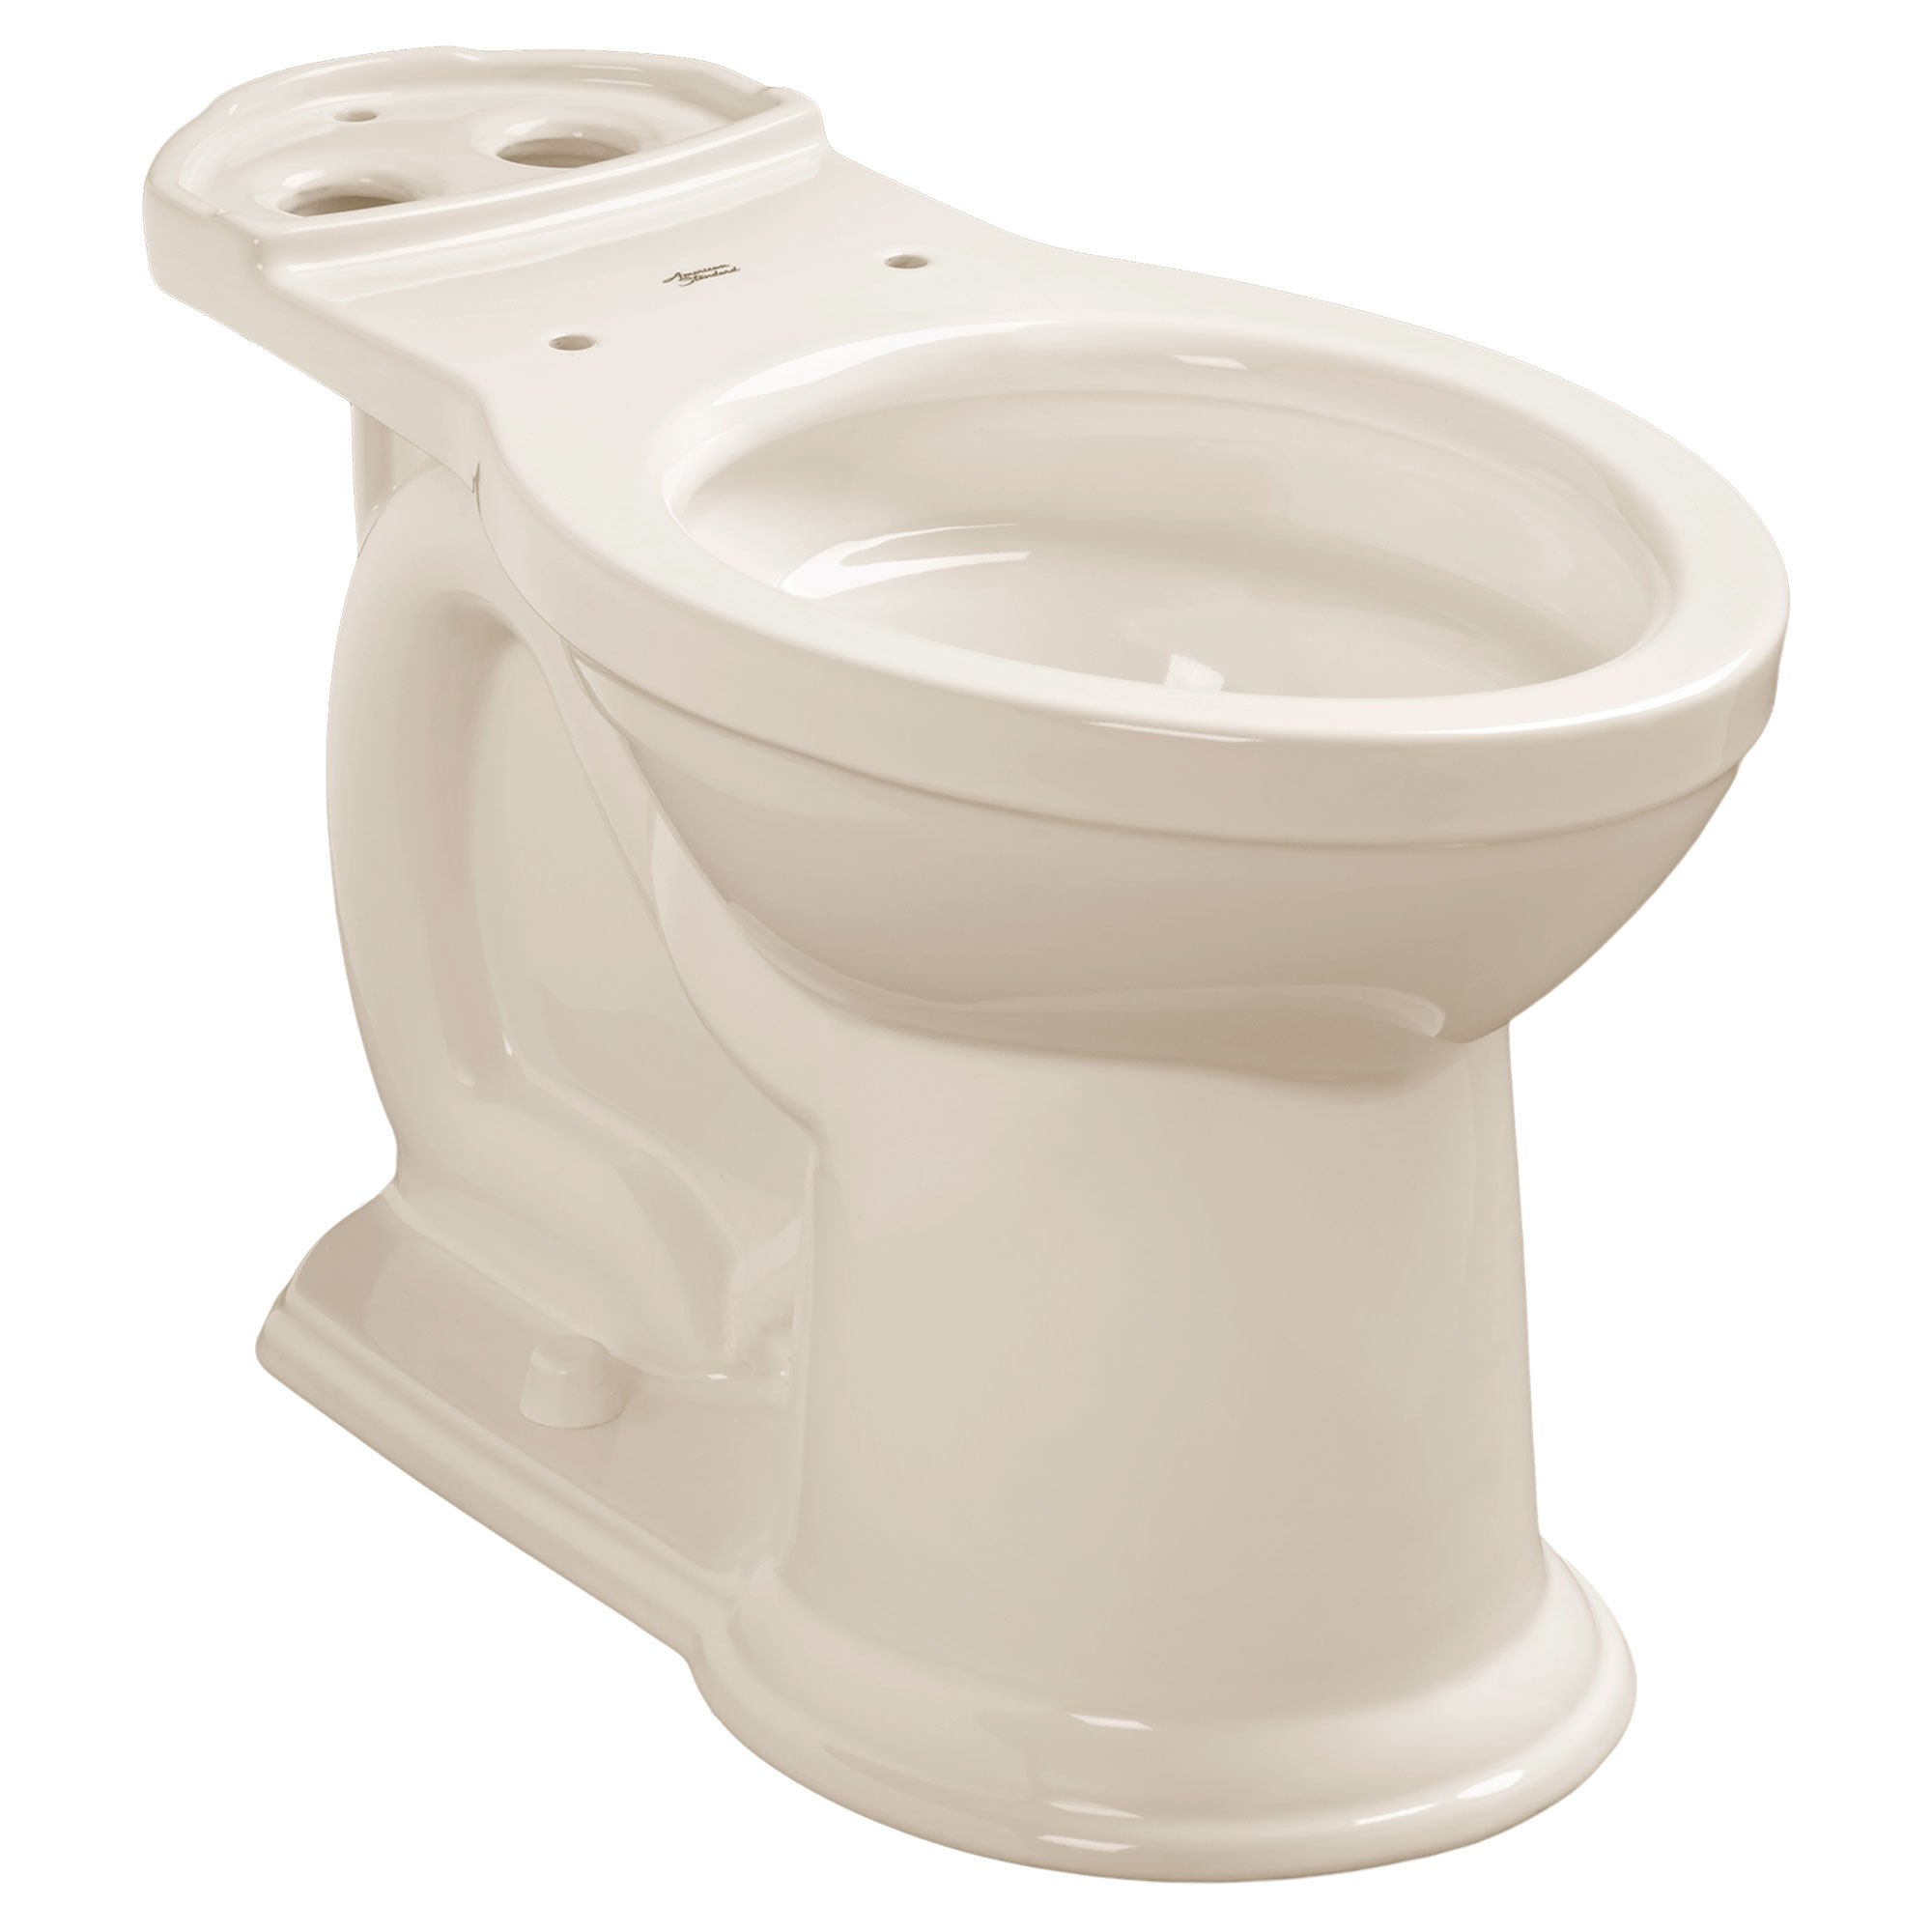 Toilette Heritage VorMax, à cuvette allongée à hauteur de chaise, sans siège